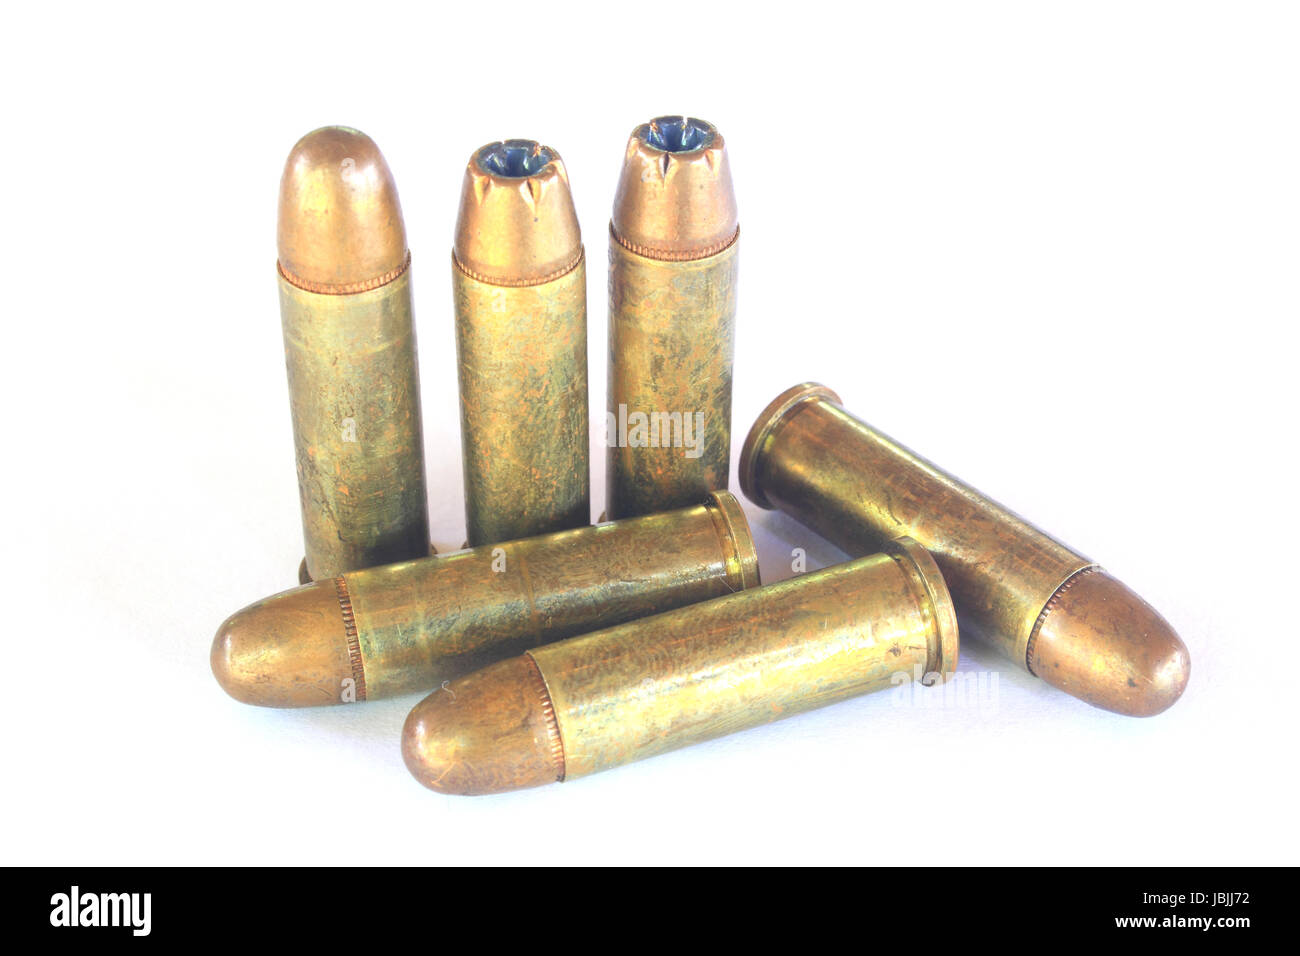 https://c8.alamy.com/comp/JBJJ72/bullets-ammunition-for-gun-isolated-on-a-white-background-JBJJ72.jpg